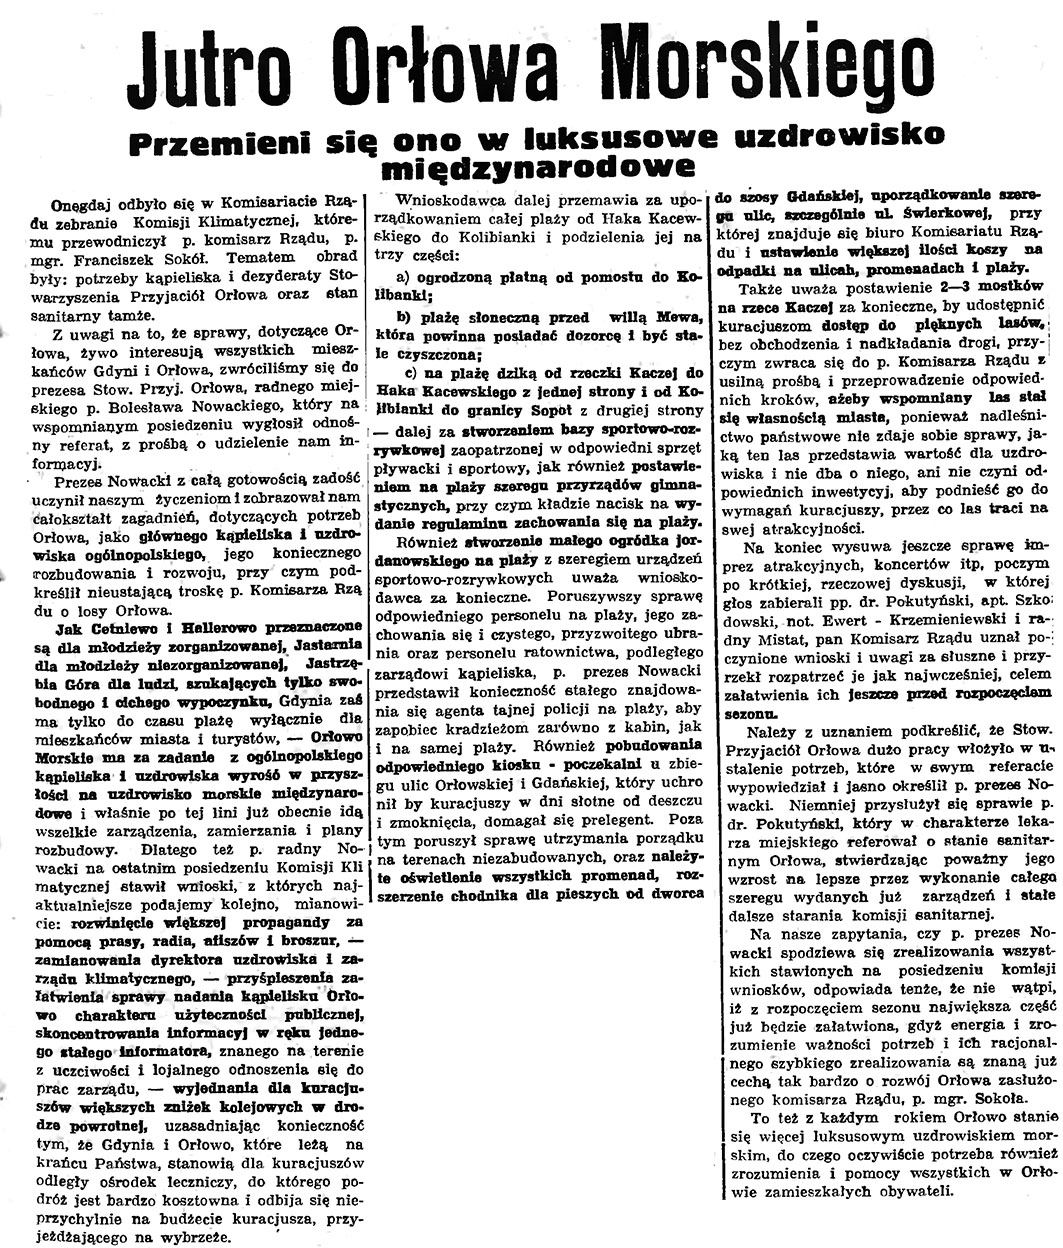 Jutro Orłowa Morskiego. Przemieni się ono w luksusowe uzdrowisko międzynarodowe // Gazeta Gdańska. - 1937, nr 123, s. 9